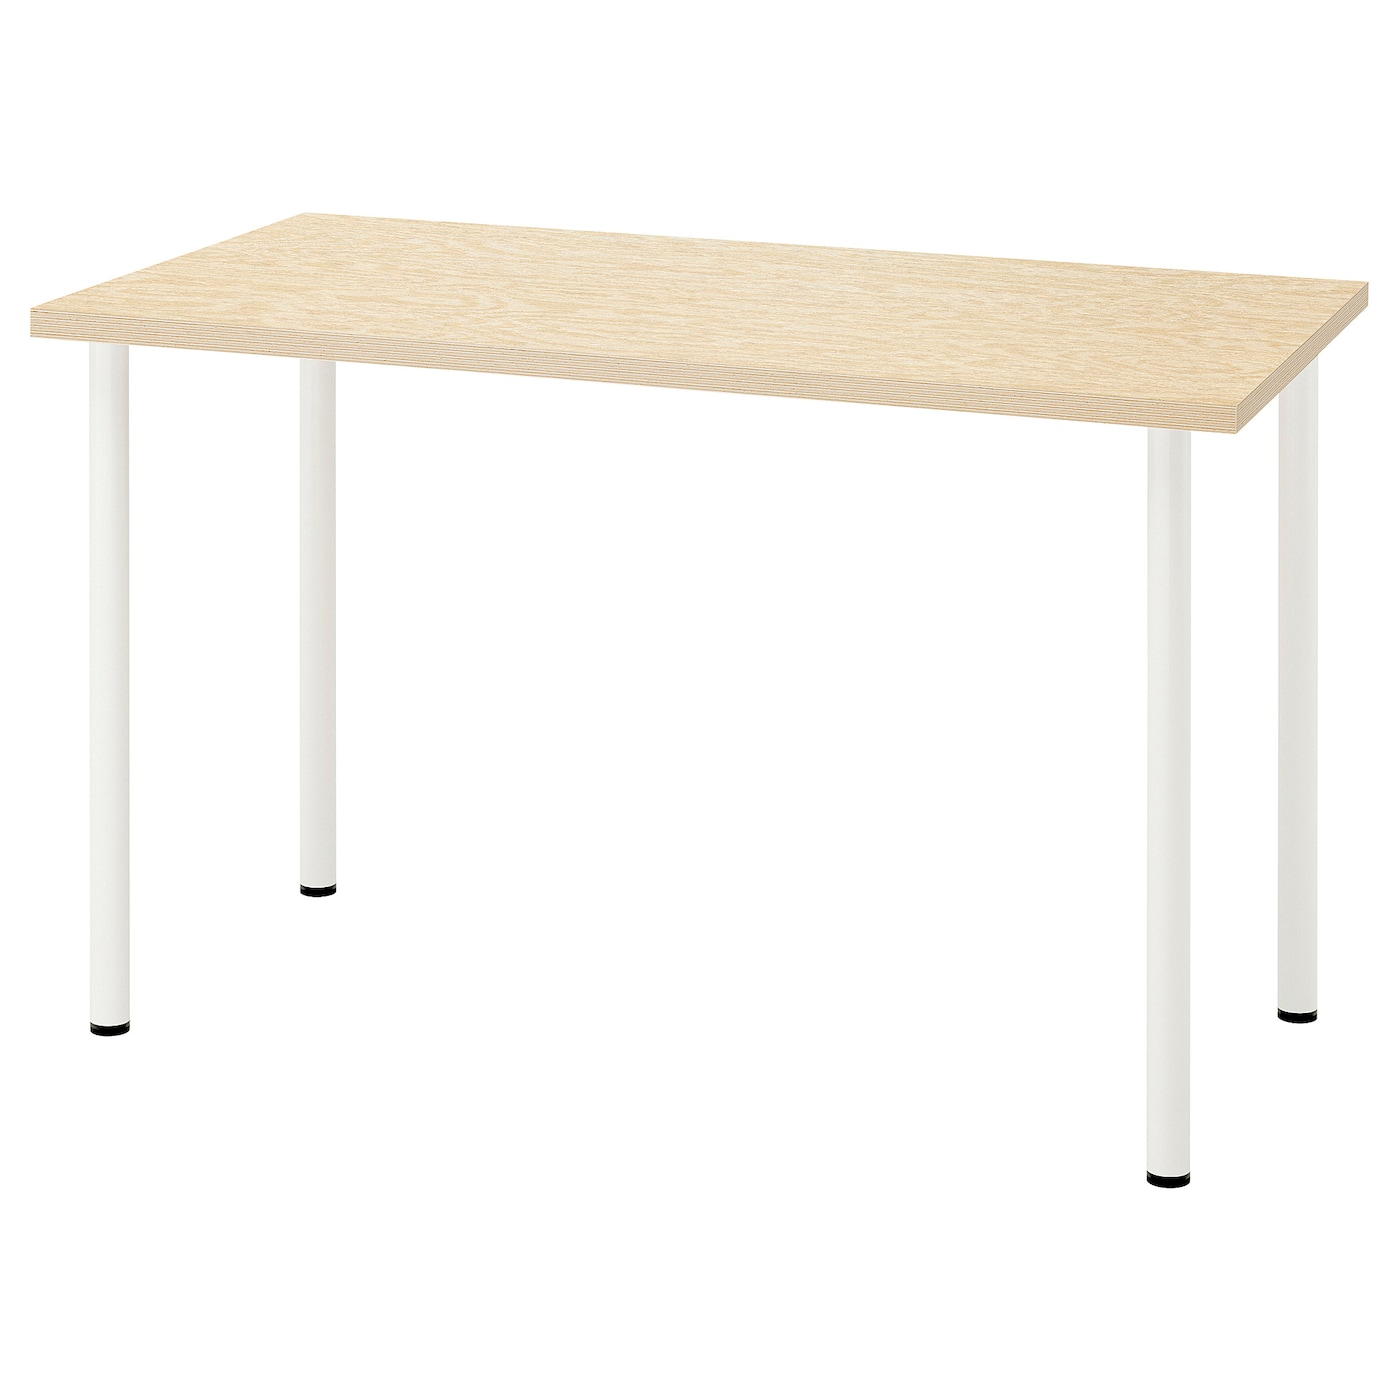 Письменный стол - IKEA MITTCIRKEL/ADILS, 120х60 см, сосна/белый, МИТЦИРКЕЛЬ/АДИЛЬС ИКЕА